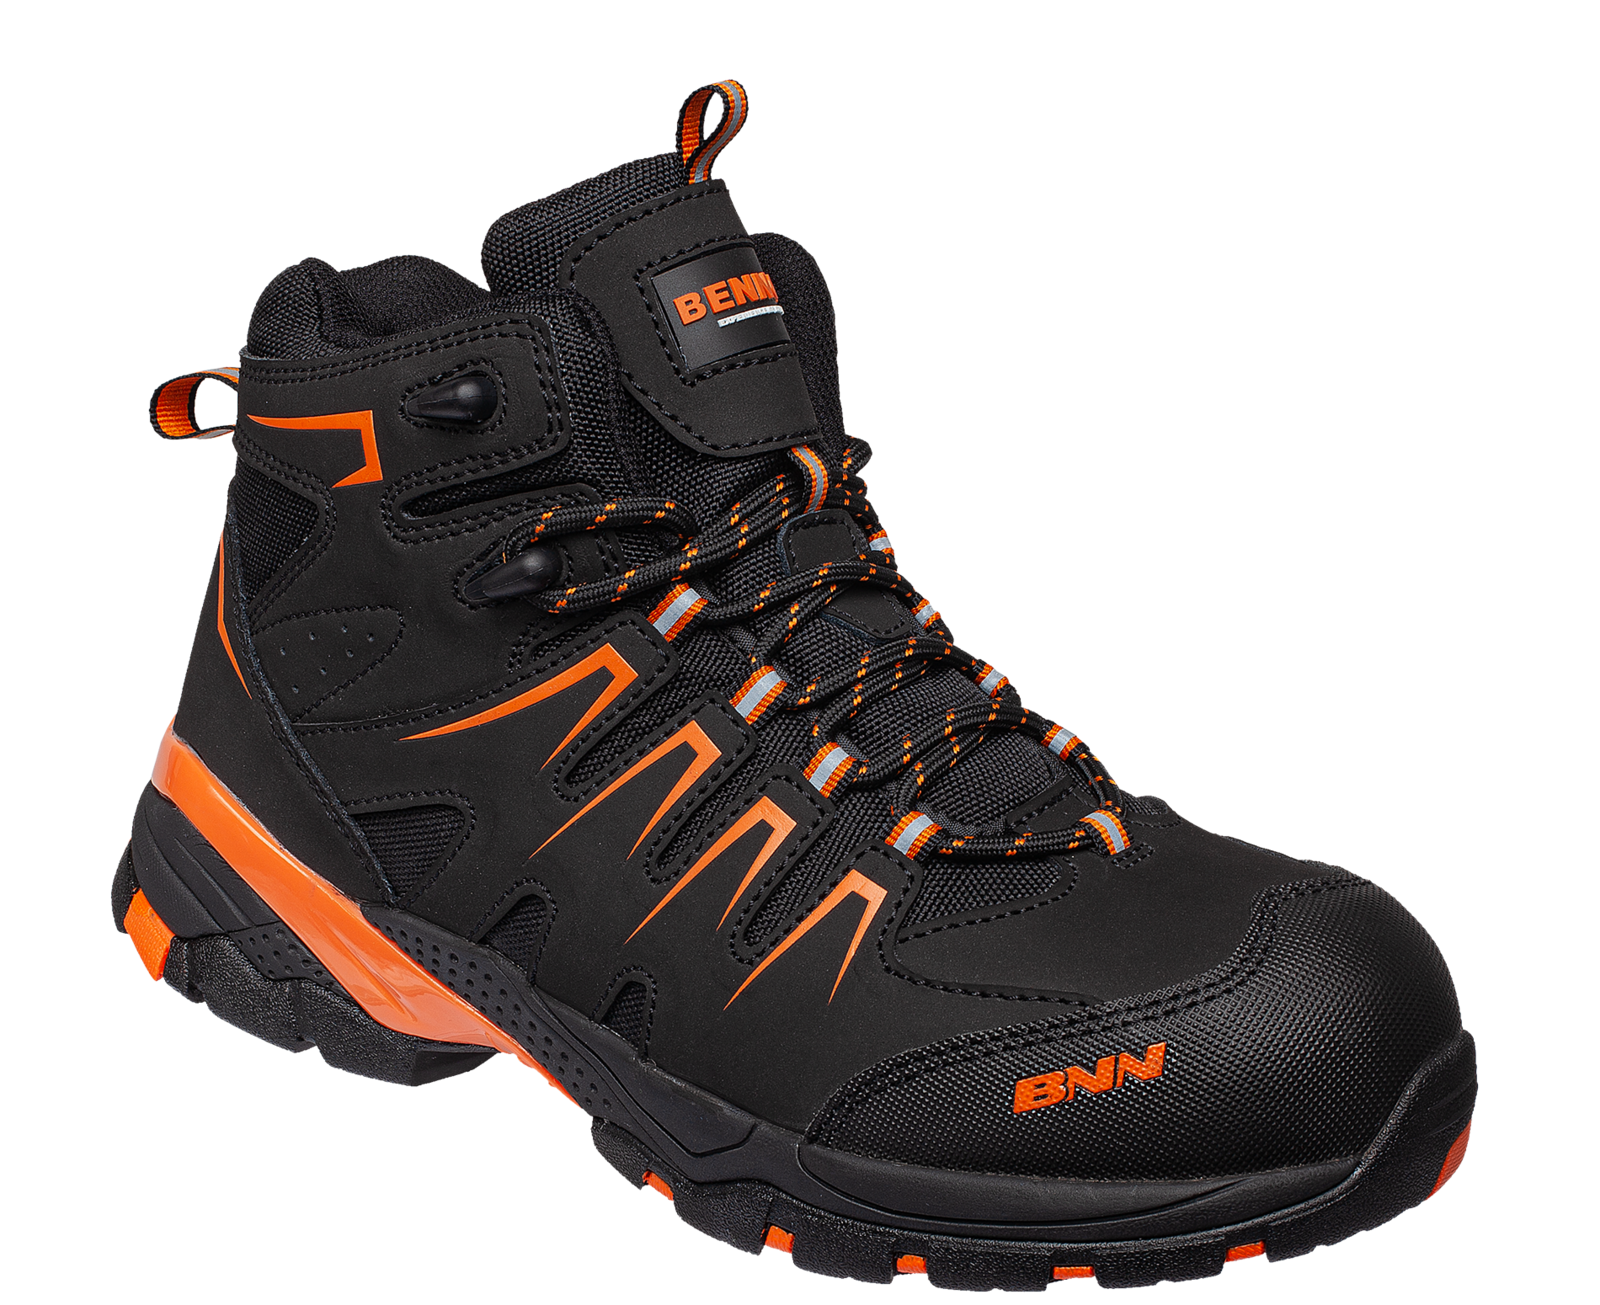 Bezpečnostná členková obuv Bennon Orlando XTR S3 NM High - veľkosť: 38, farba: čierna/oranžová